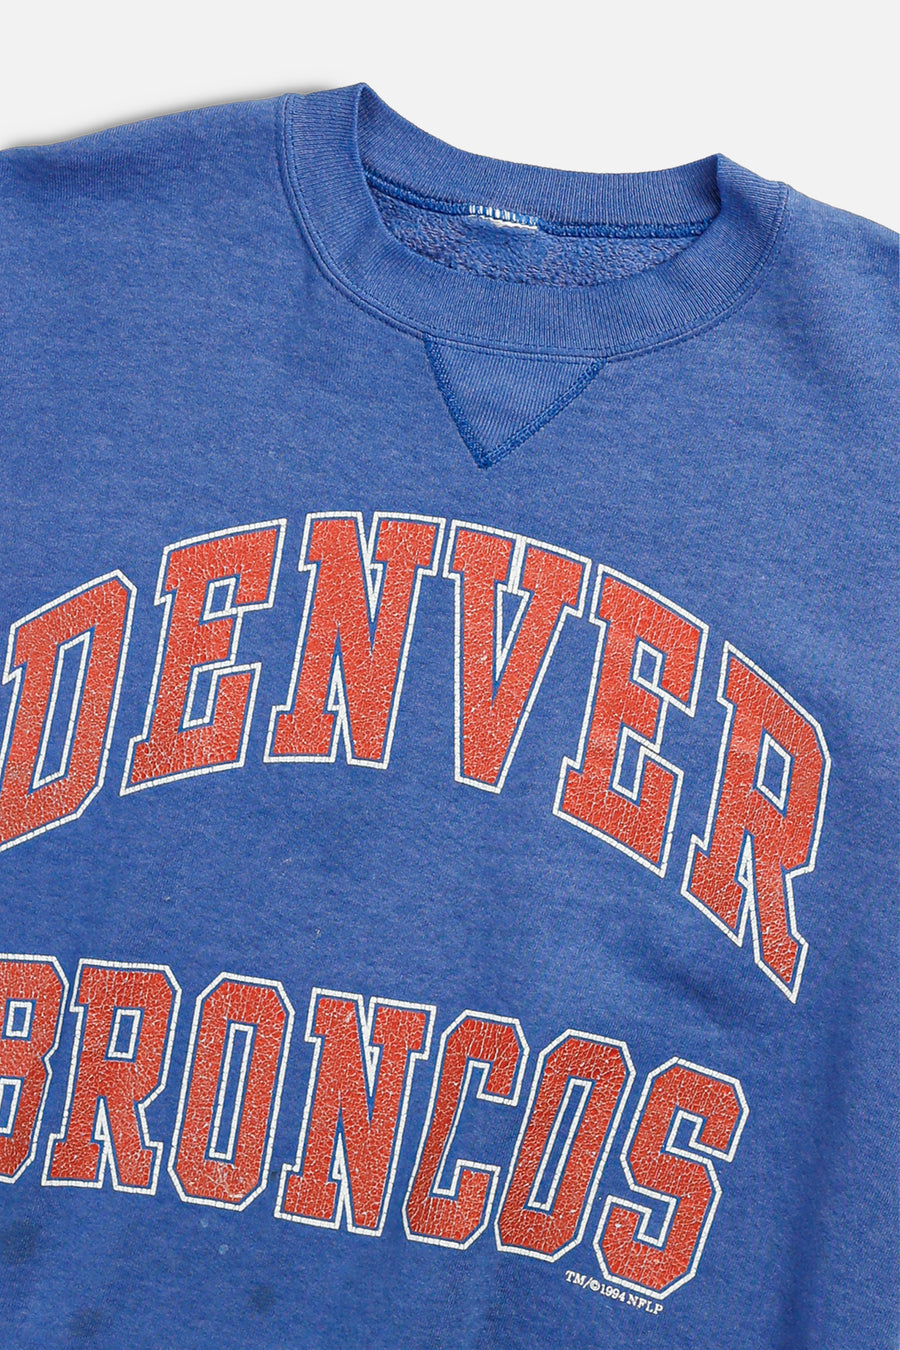 Vintage Denver Broncos NFL Sweatshirt - S